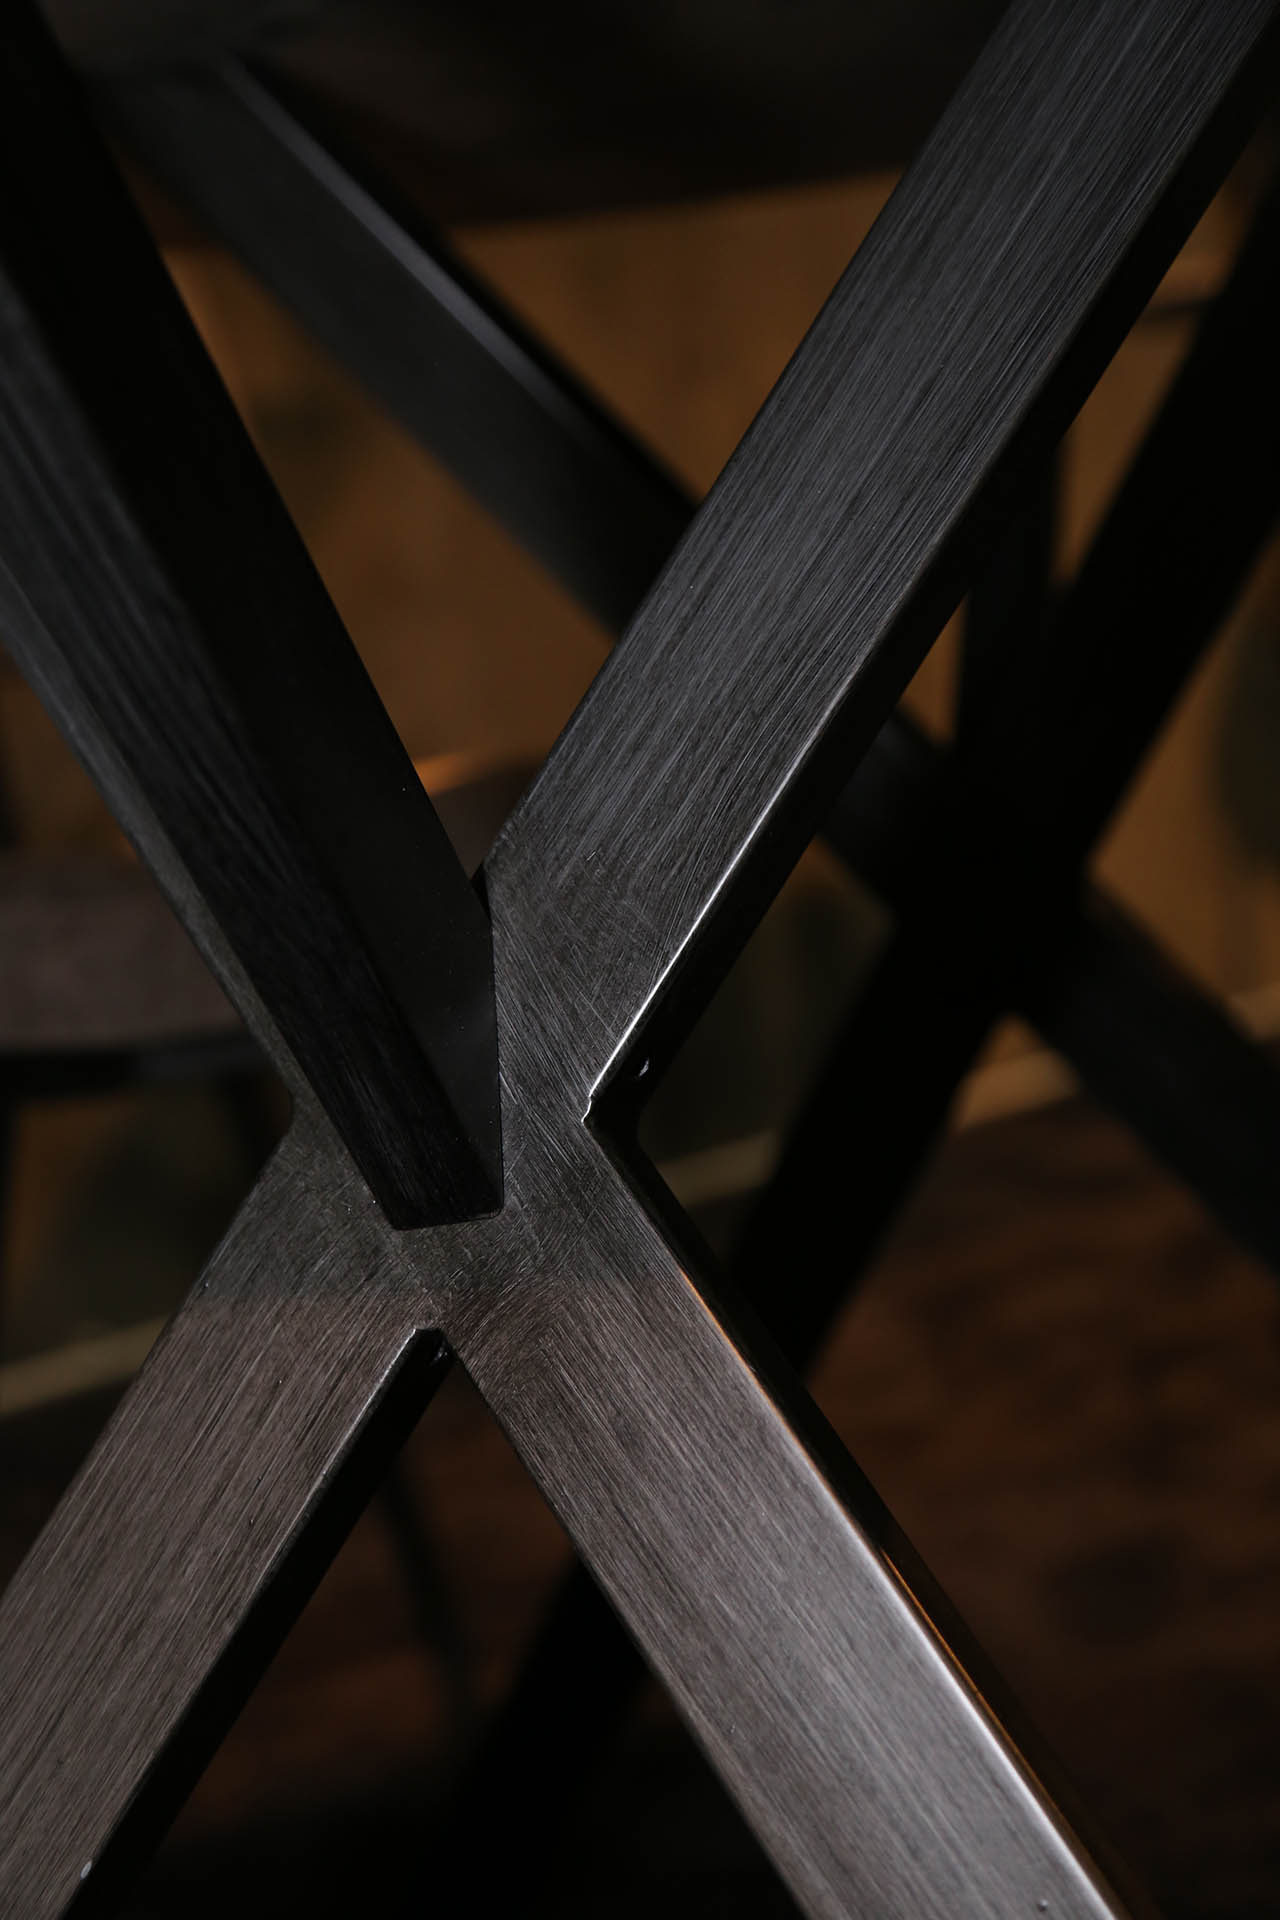 Jedálenský stôl 56-81  Ø120cm Bielený dub